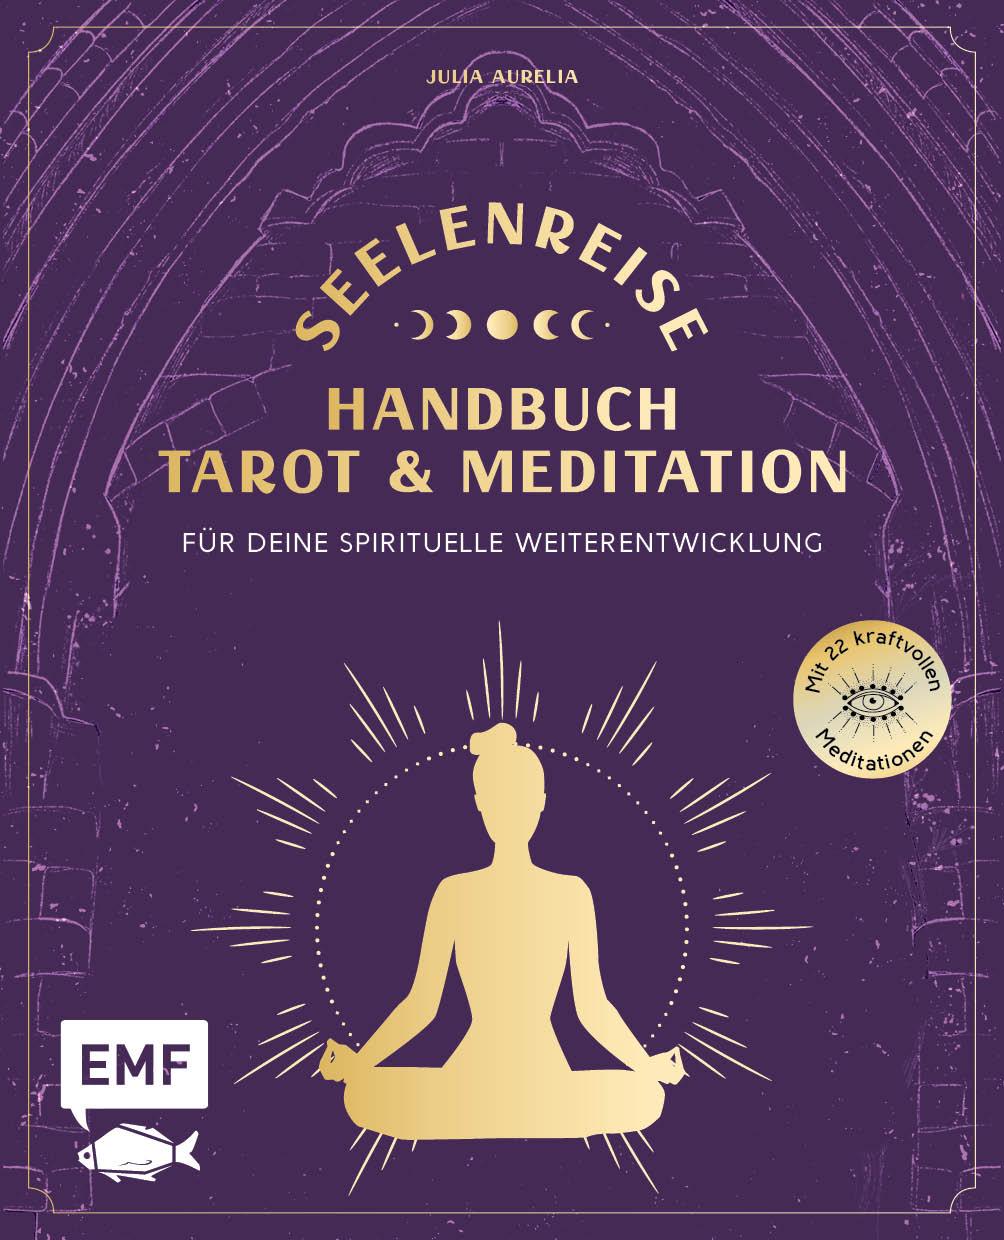 Книга Seelenreise - Tarot und Meditation: Handbuch für deine spirituelle Weiterentwicklung 